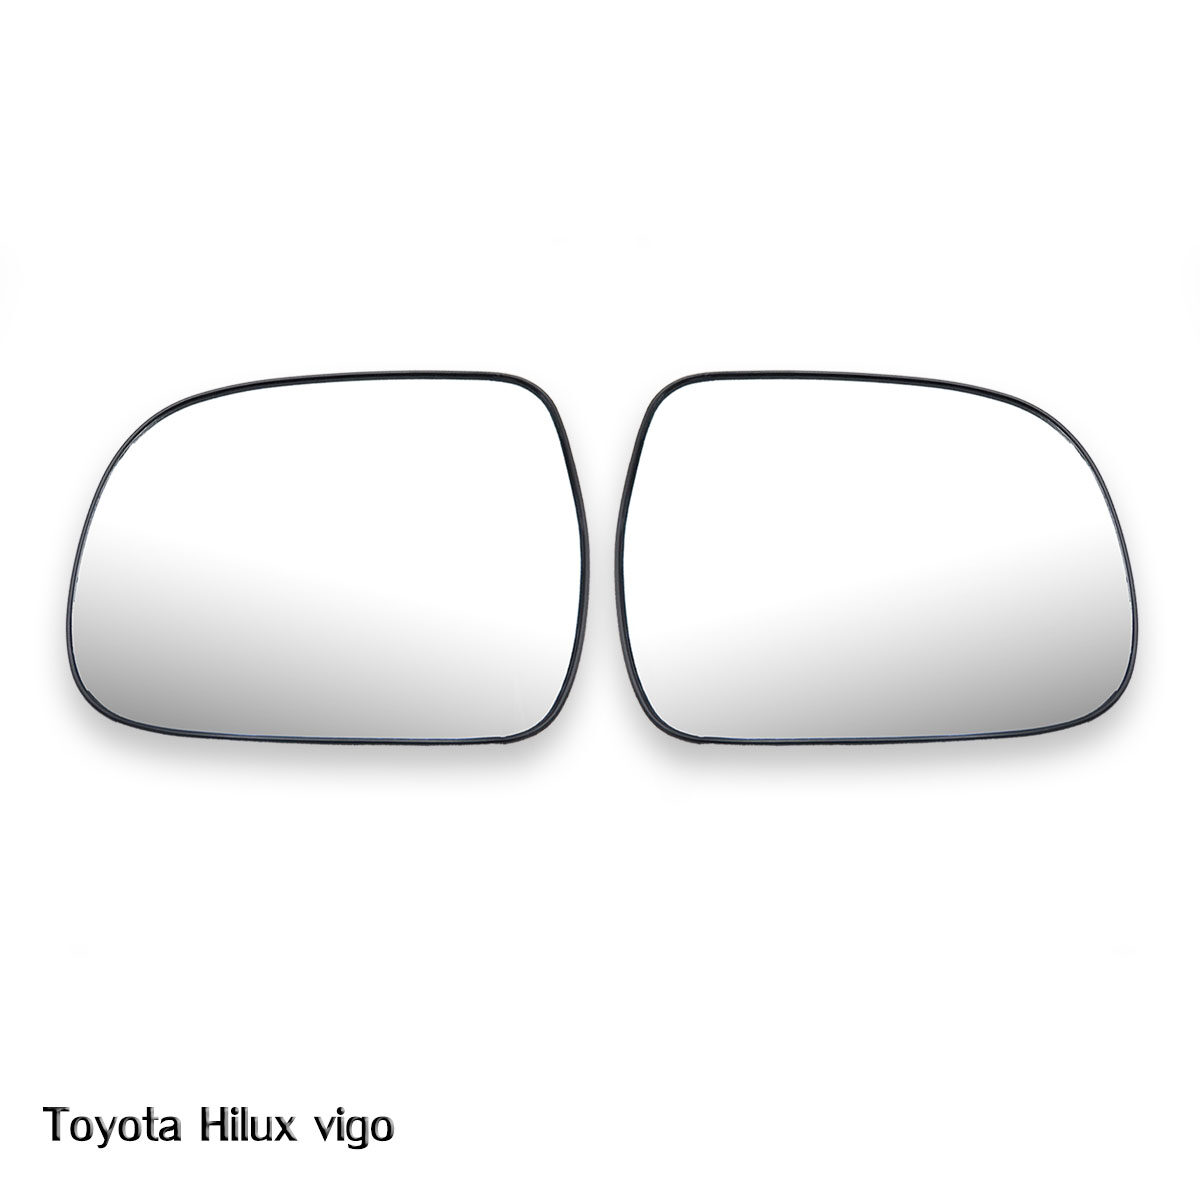 เนื้อเลนส์กระจก ข้าง ขวา+ซ้าย Lh+ Rh ใส่ Toyota Hilux Vigo RH+LH  Wing Side Door Mirror Glass Len Hilux Vigo Mk6 Toyota 2005-2014 มีบริการเก็บเงินปลายทาง